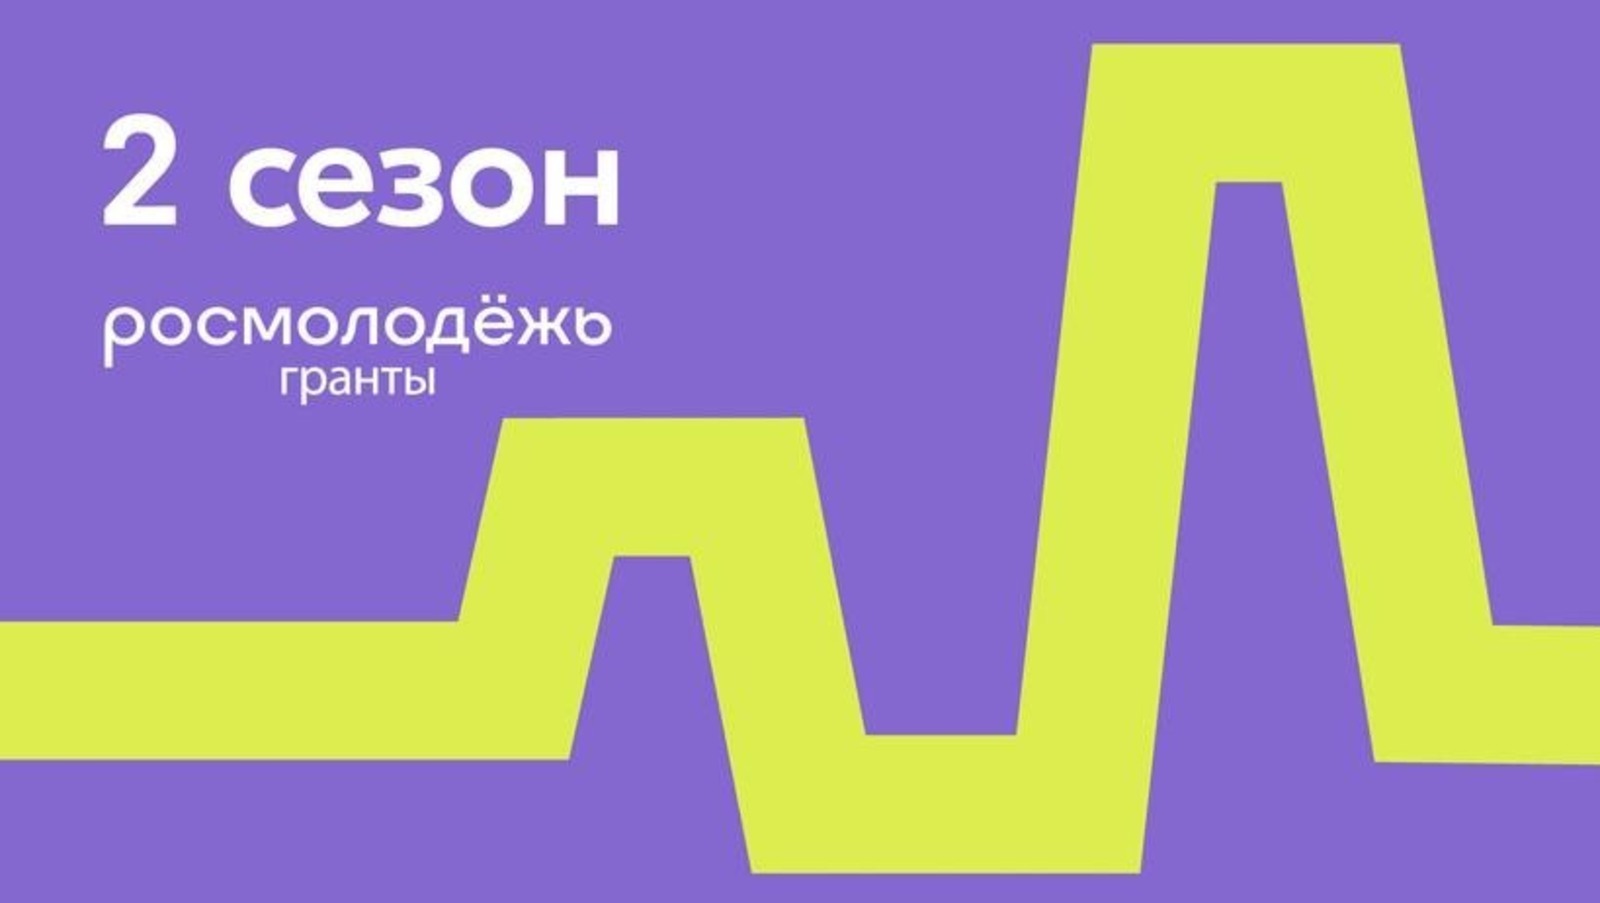 В грантовом конкурсе молодежь Башкирии может выиграть до 1 млн рублей на социально значимые проекты